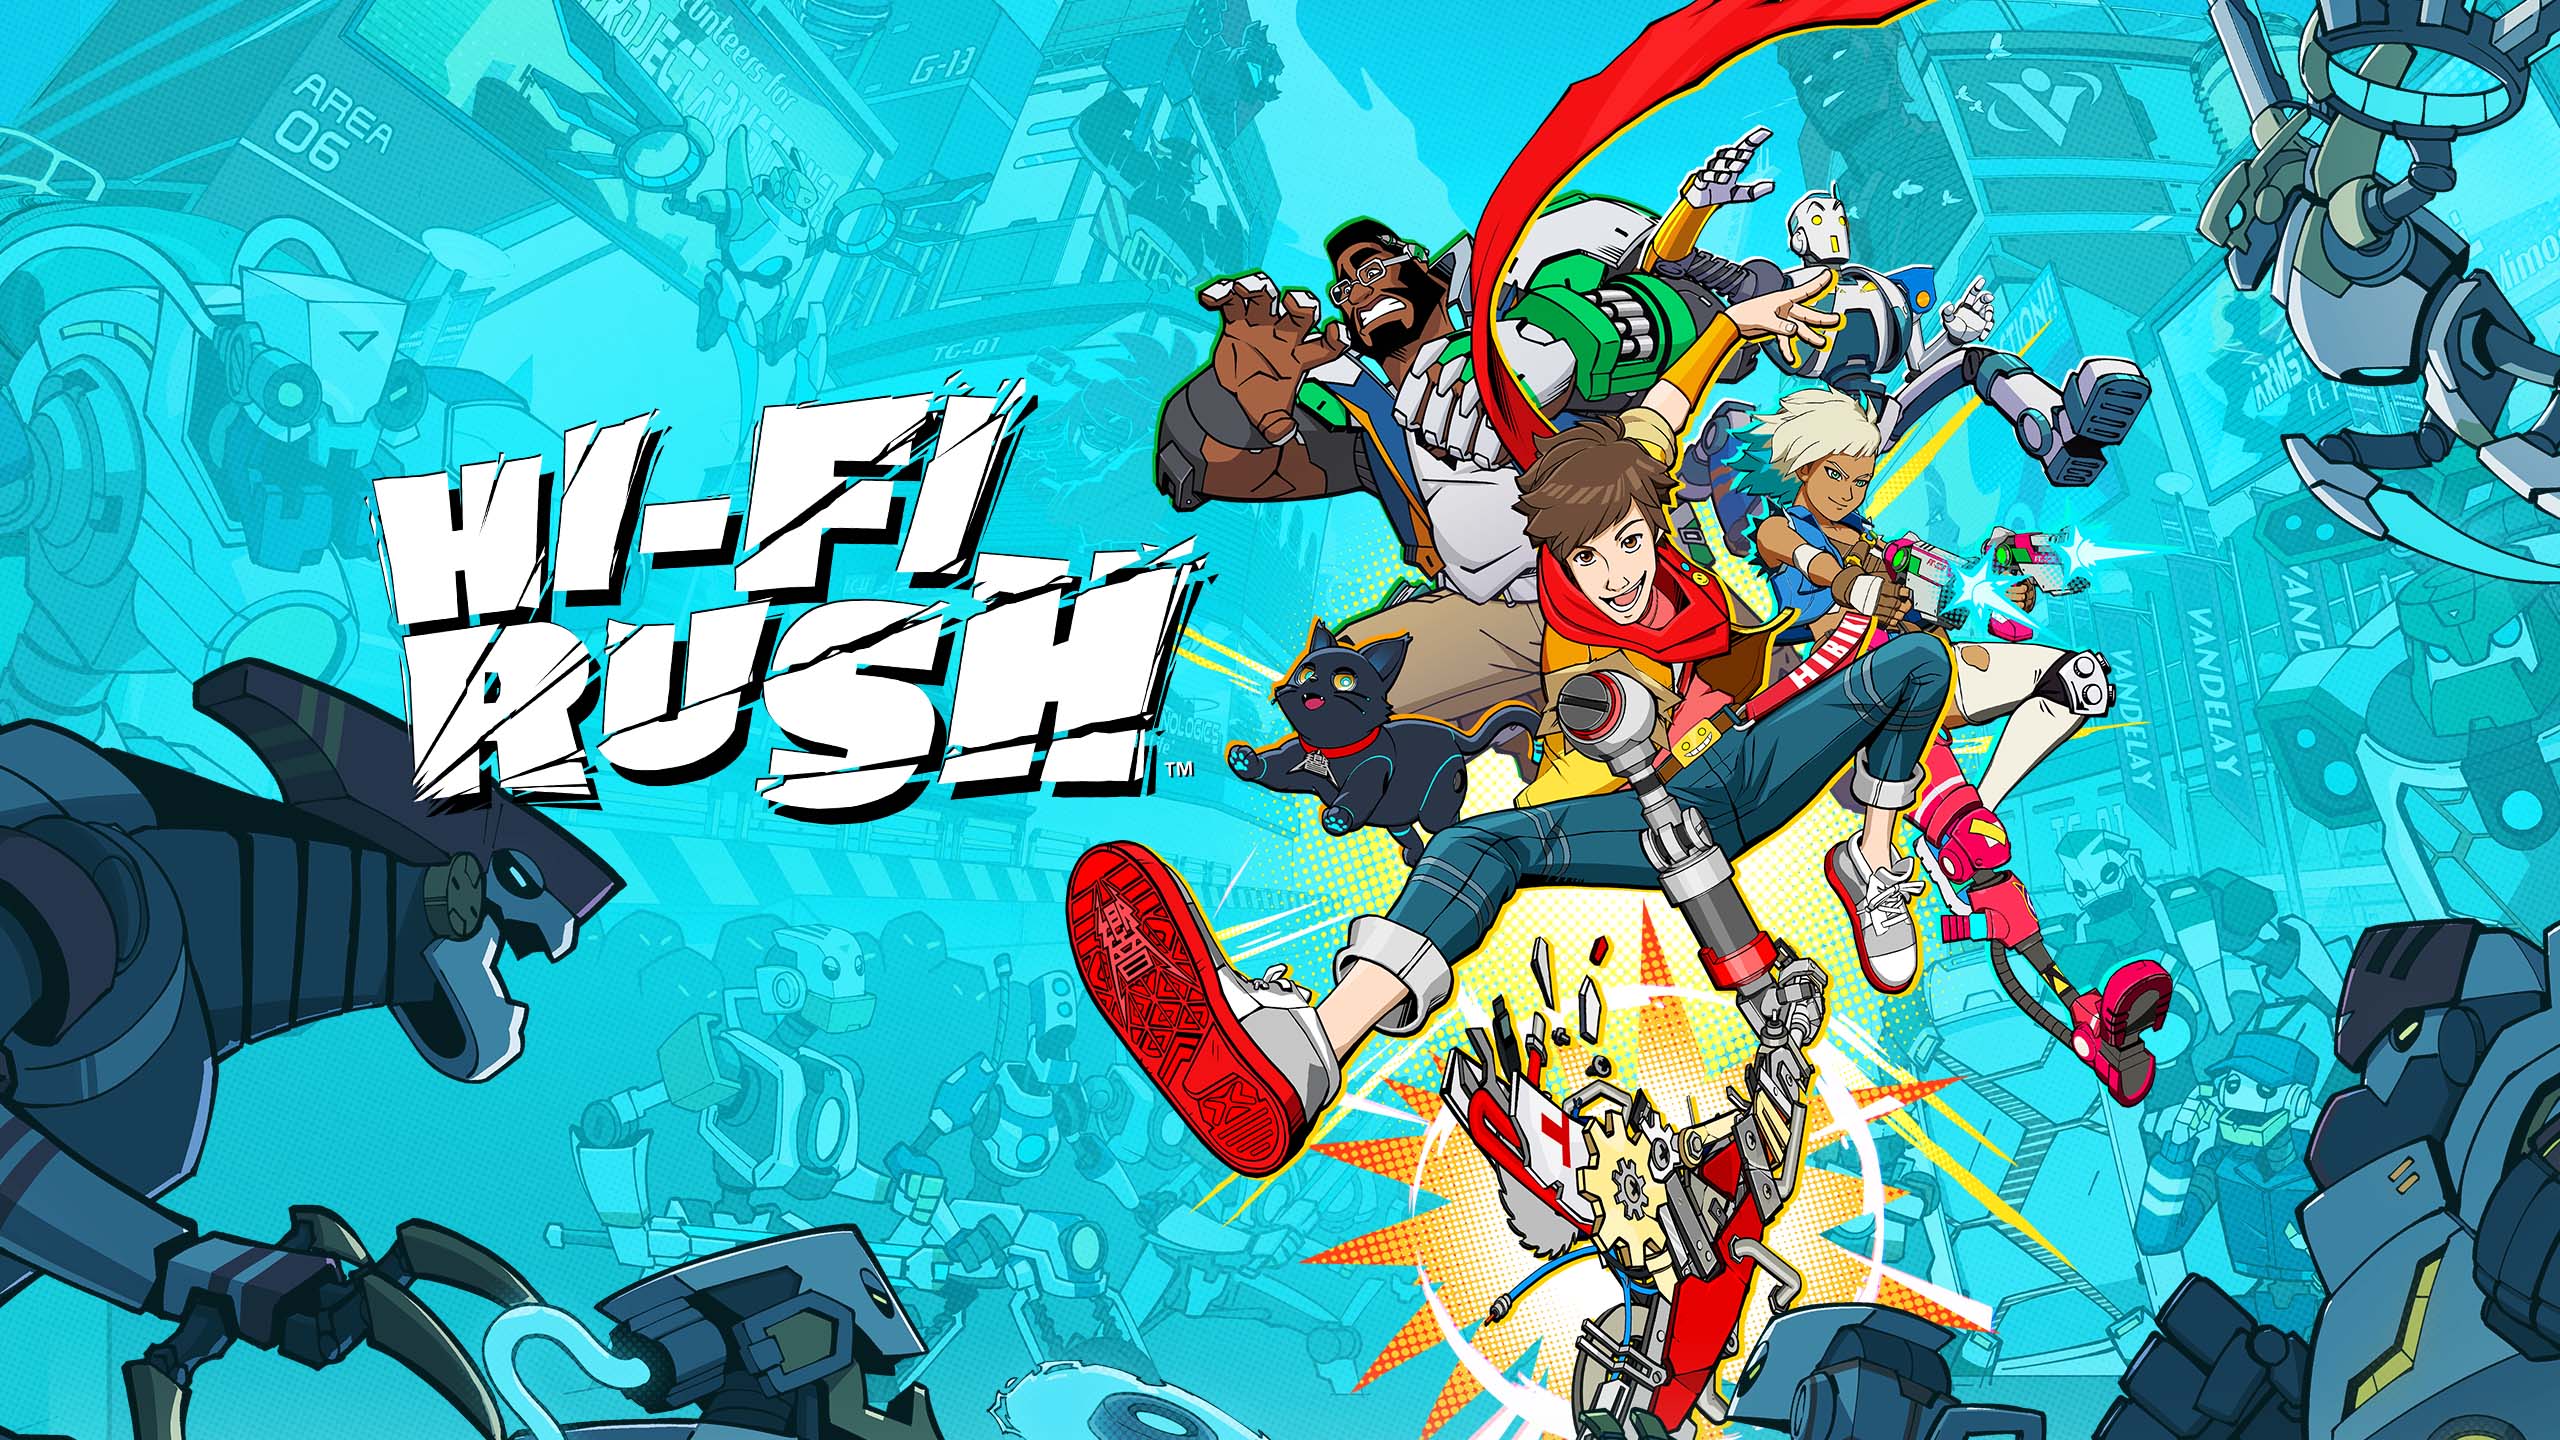 З'явилися нові підтвердження чуток щодо того, що Hi-Fi Rush з'явиться на Nintendo Switch і PlayStation